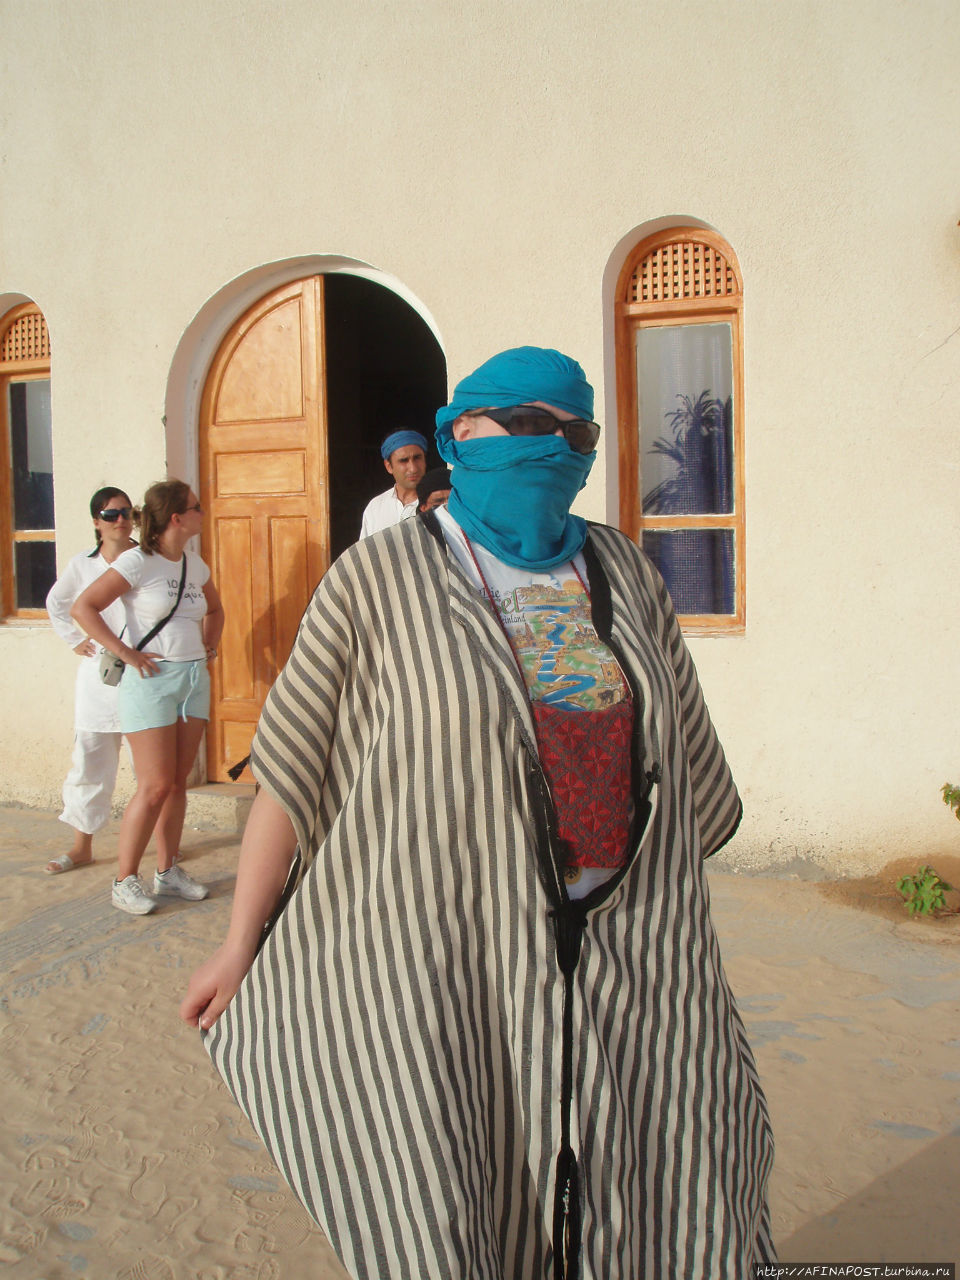 Дуз — ворота Сахары Дуз, Тунис